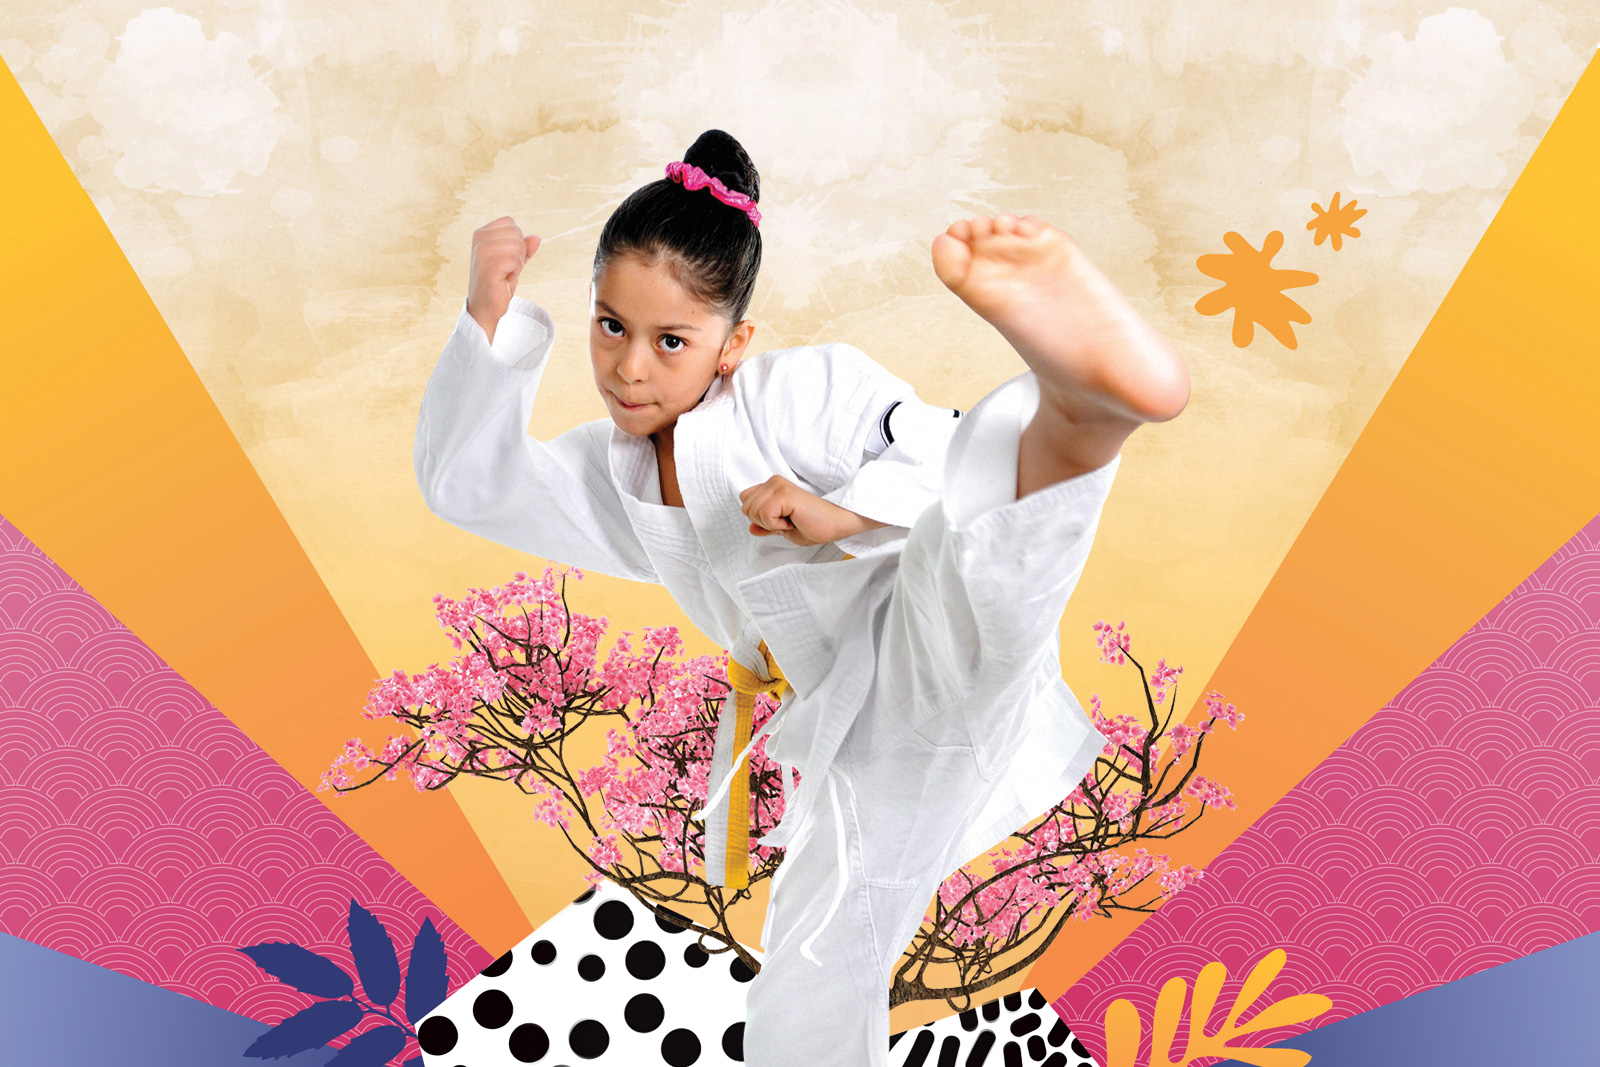 Pandamonium Karate and Yoga workshops